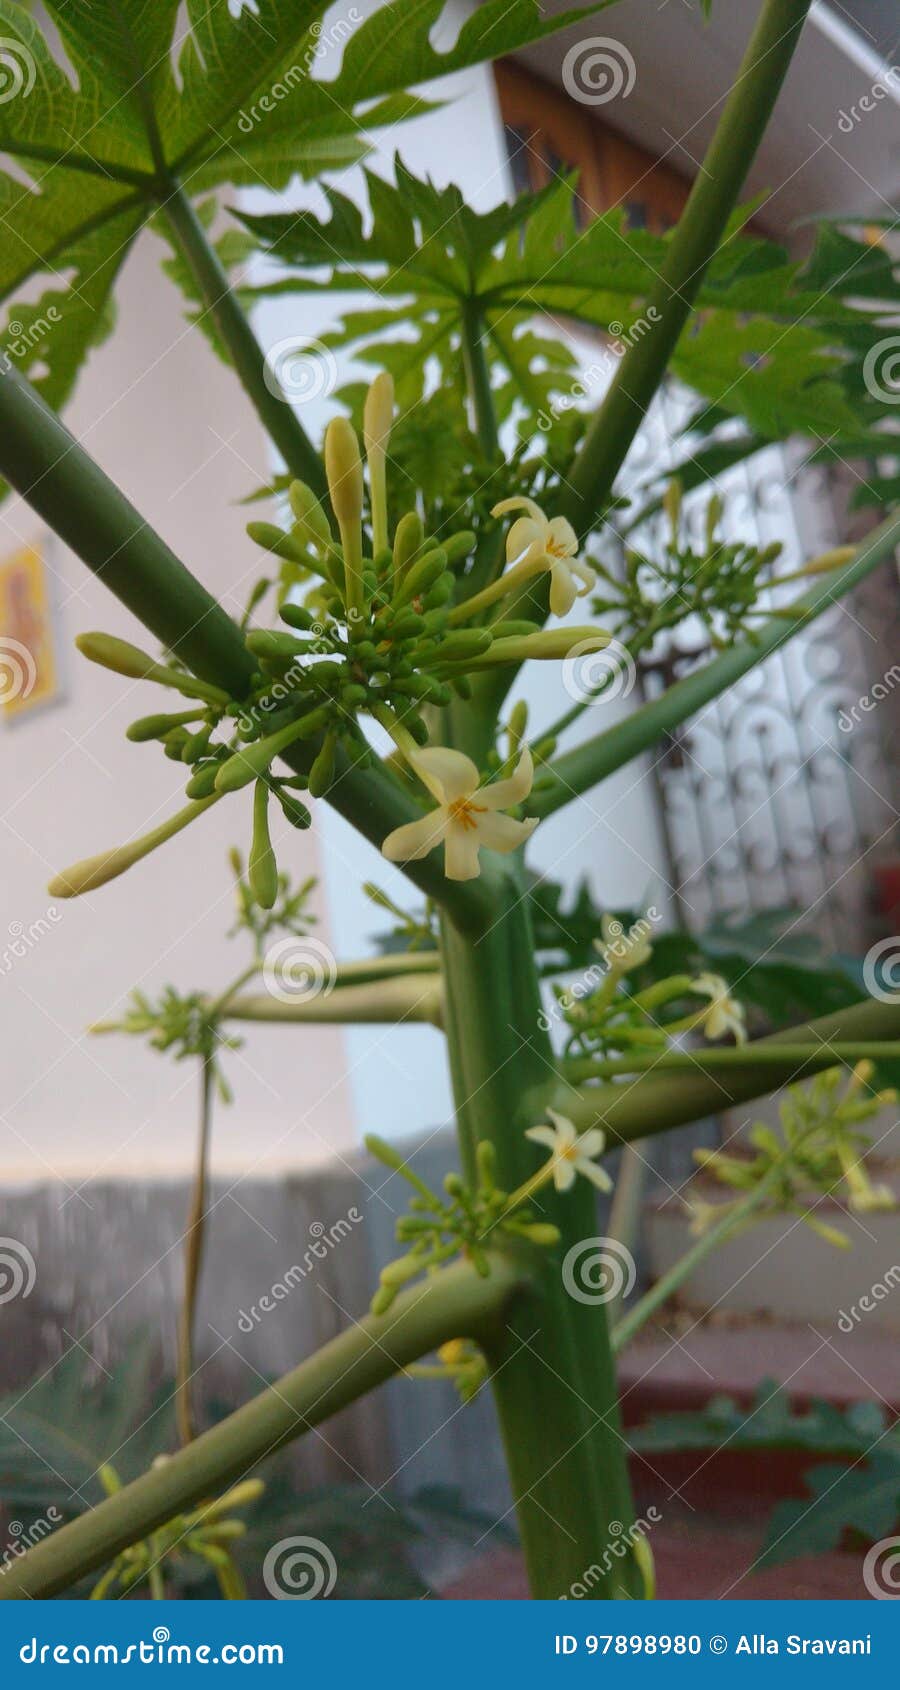 papaya or carica papaya flowers and buds